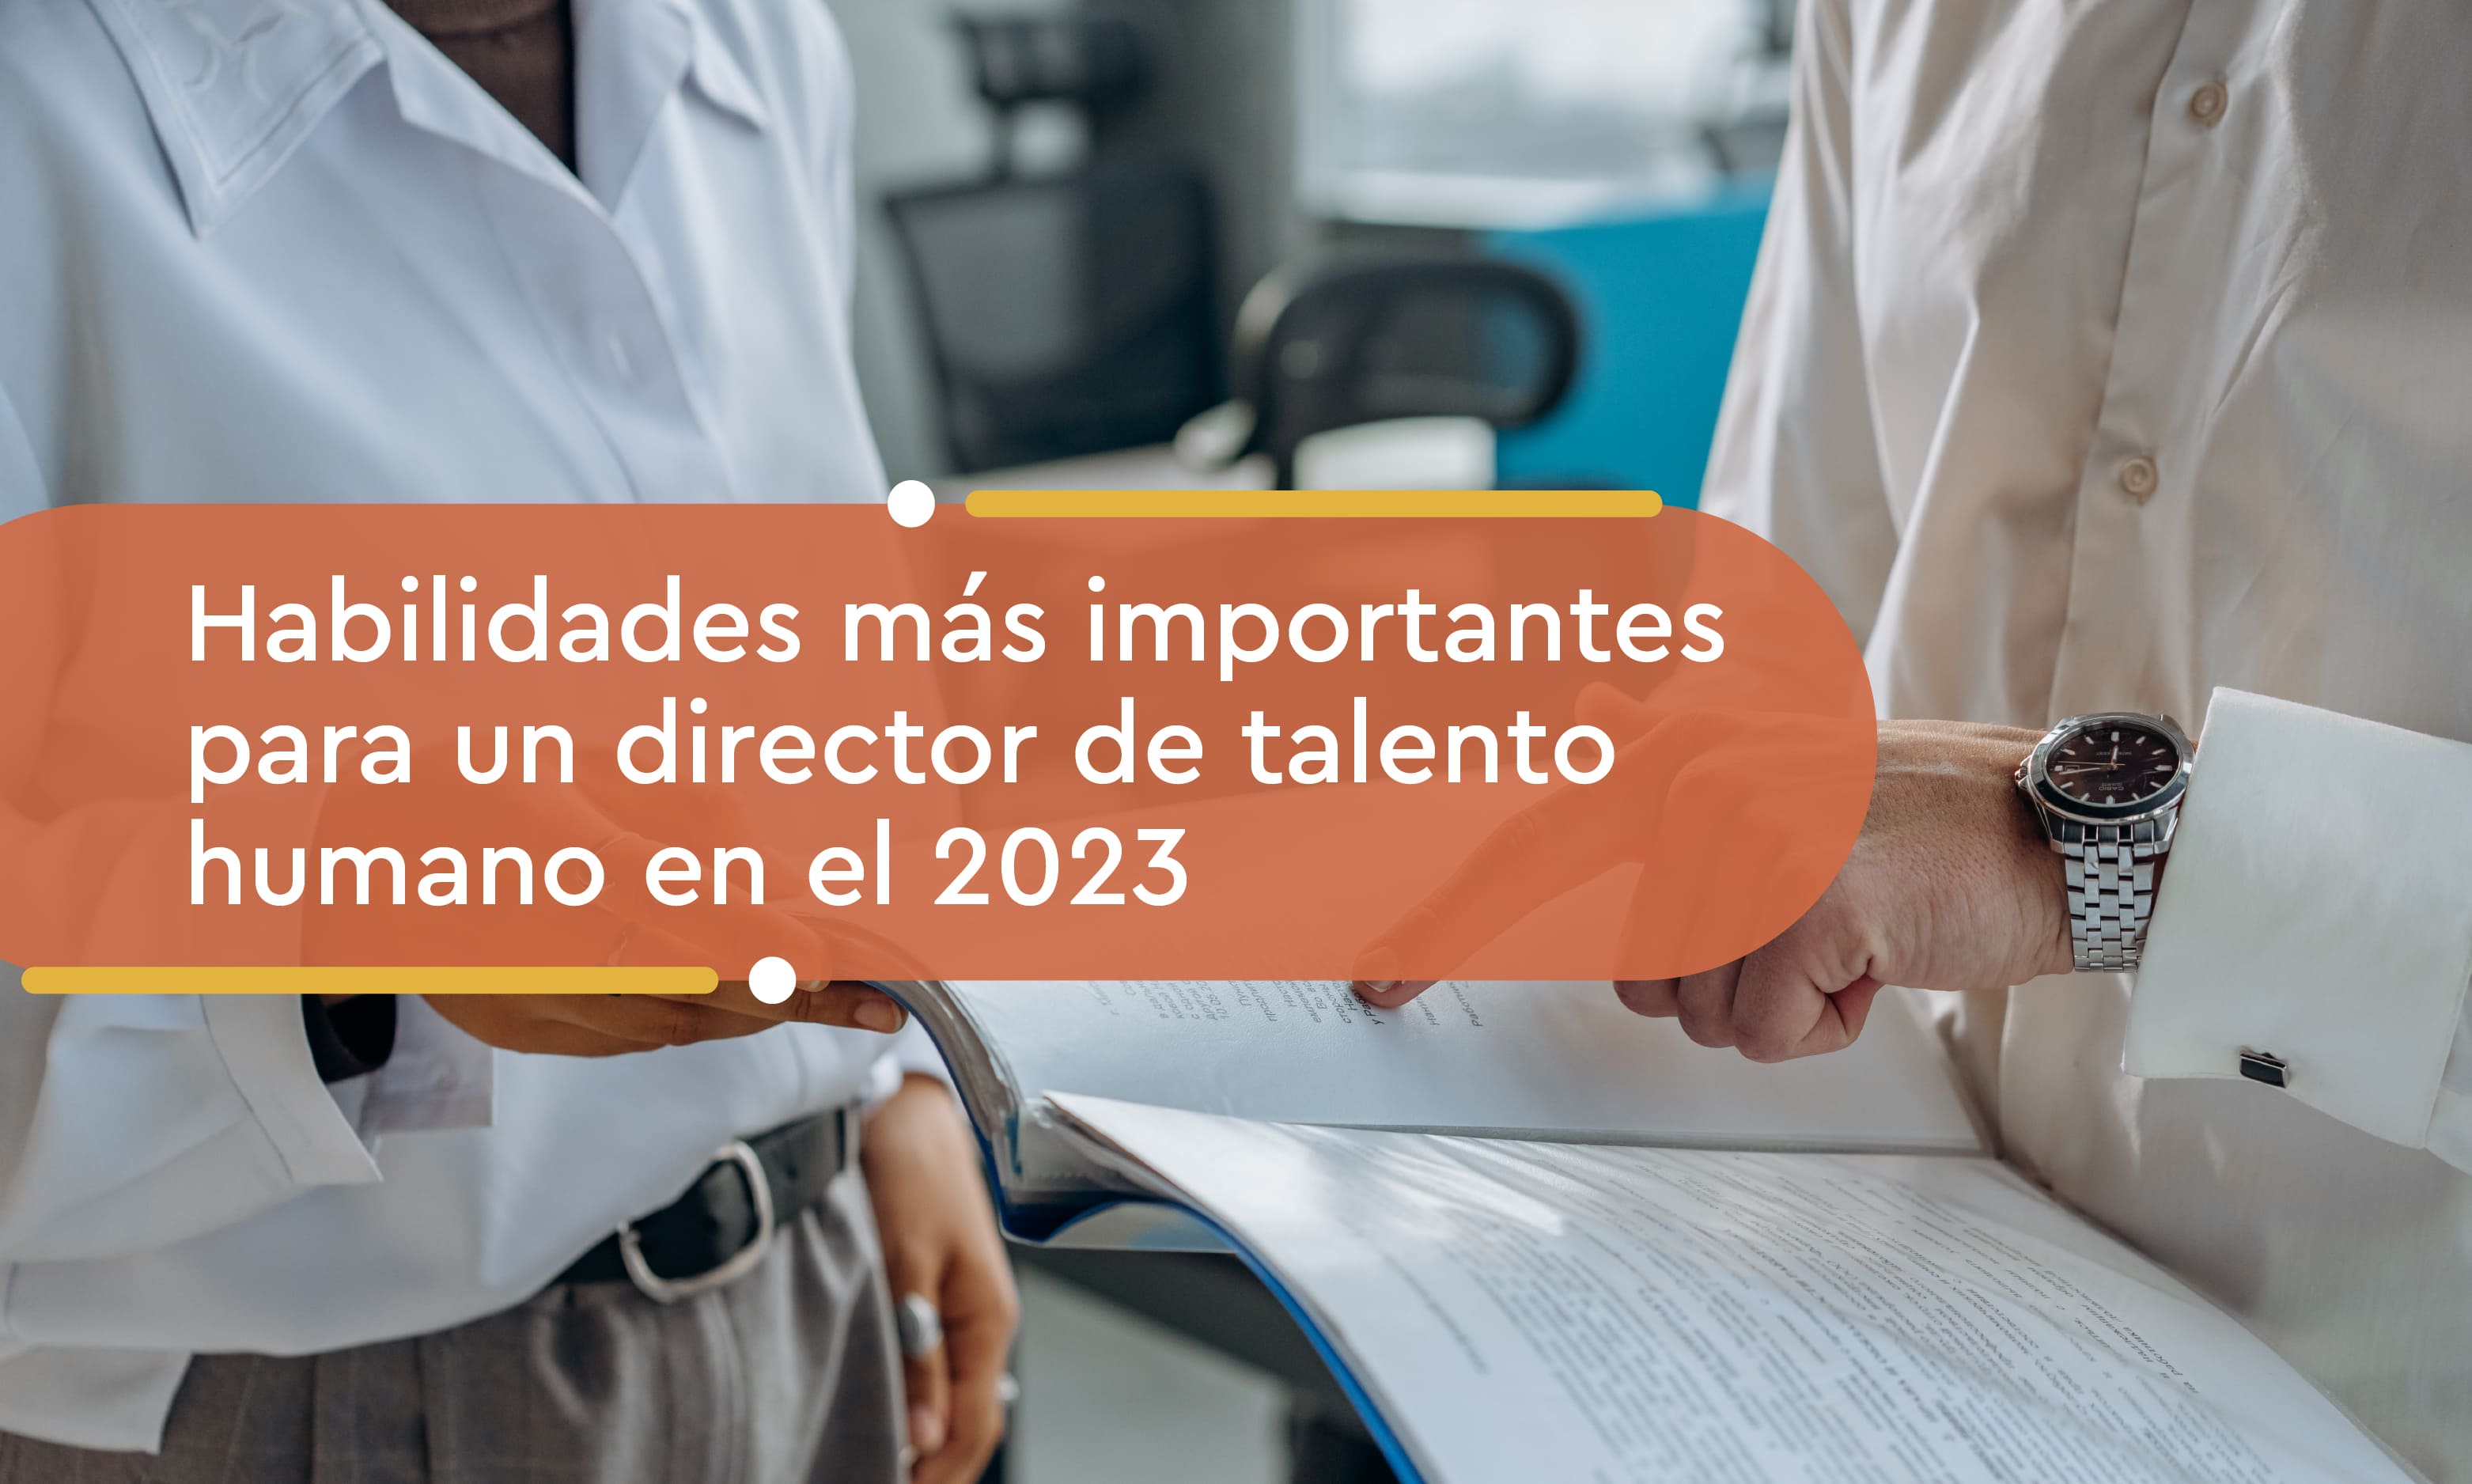 Habilidades más importantes para un director de talento humano en el 2023